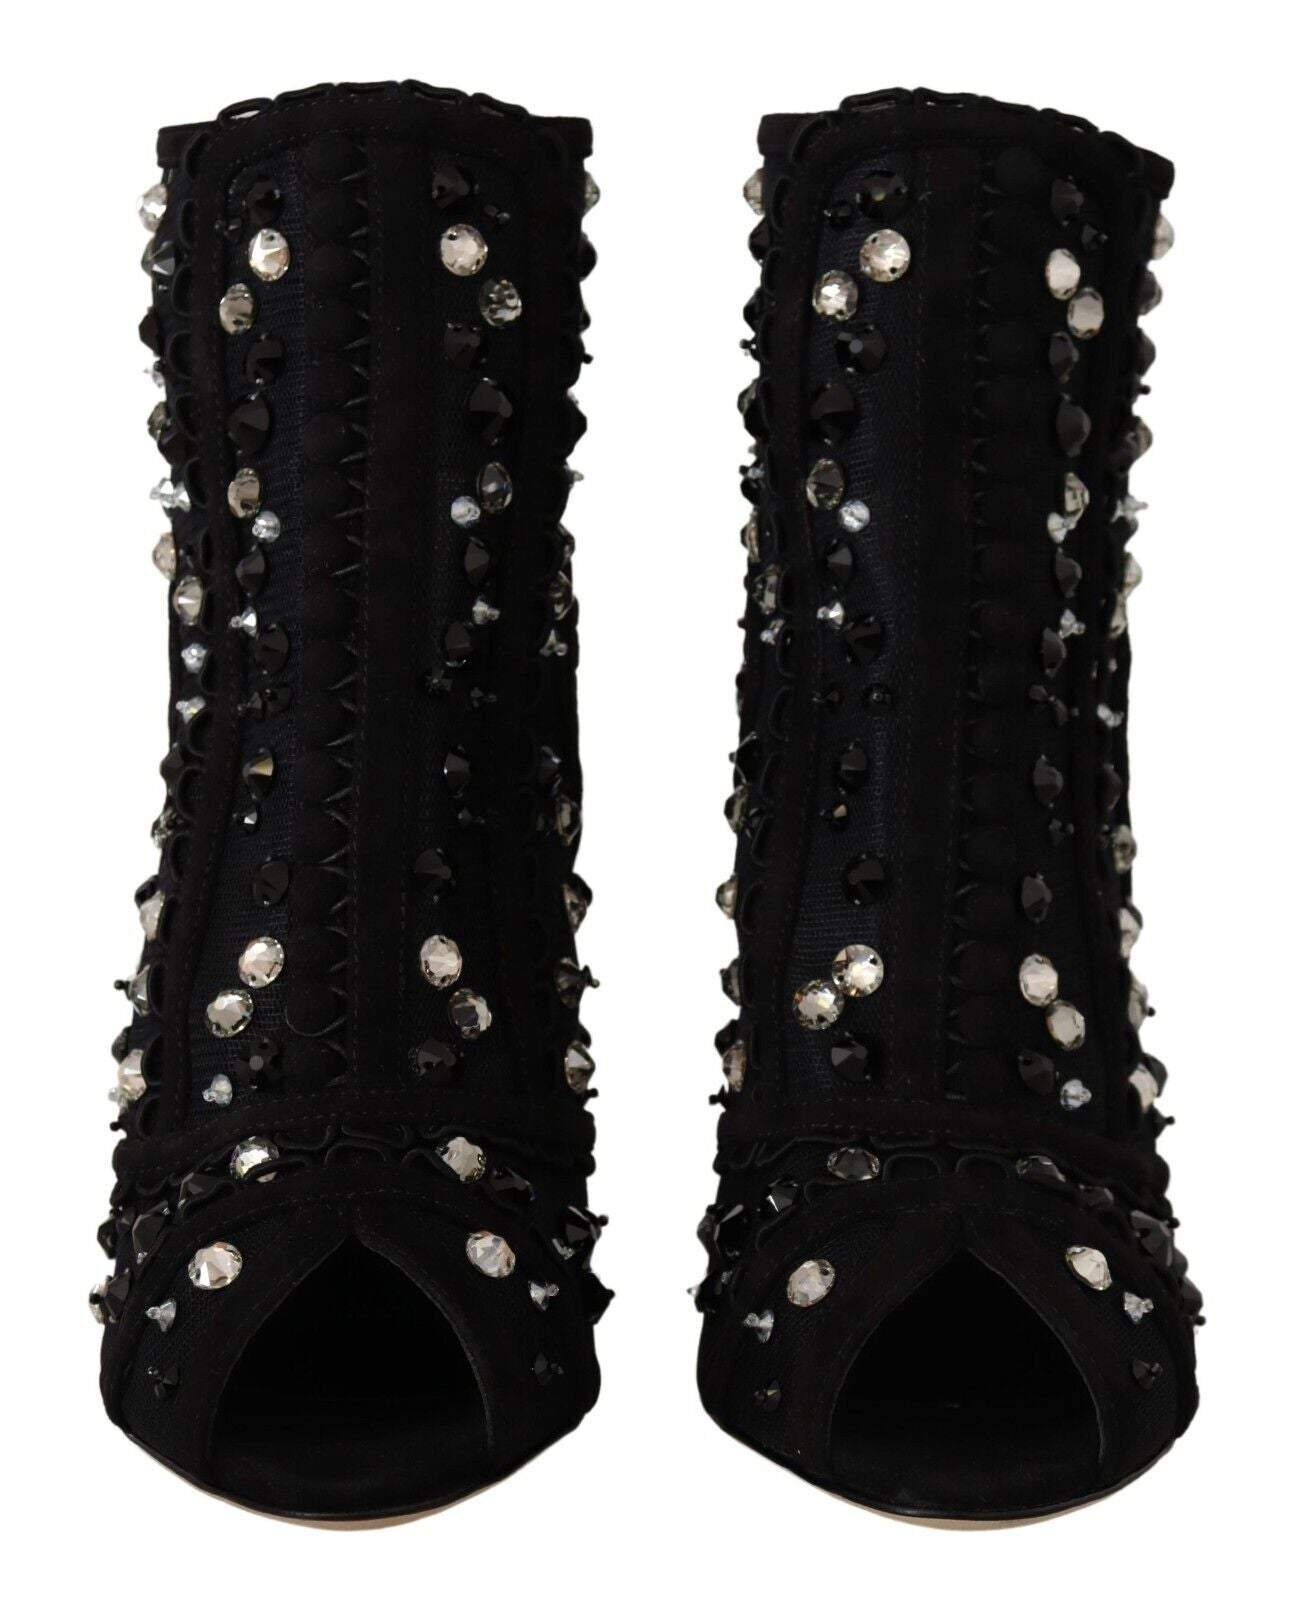 Dolce & Gabbana Black Crystals Heels Zipper Short Boots Black, Boots - Women - Shoes, Dolce & Gabbana, EU37.5/US7, feed-1 at SEYMAYKA